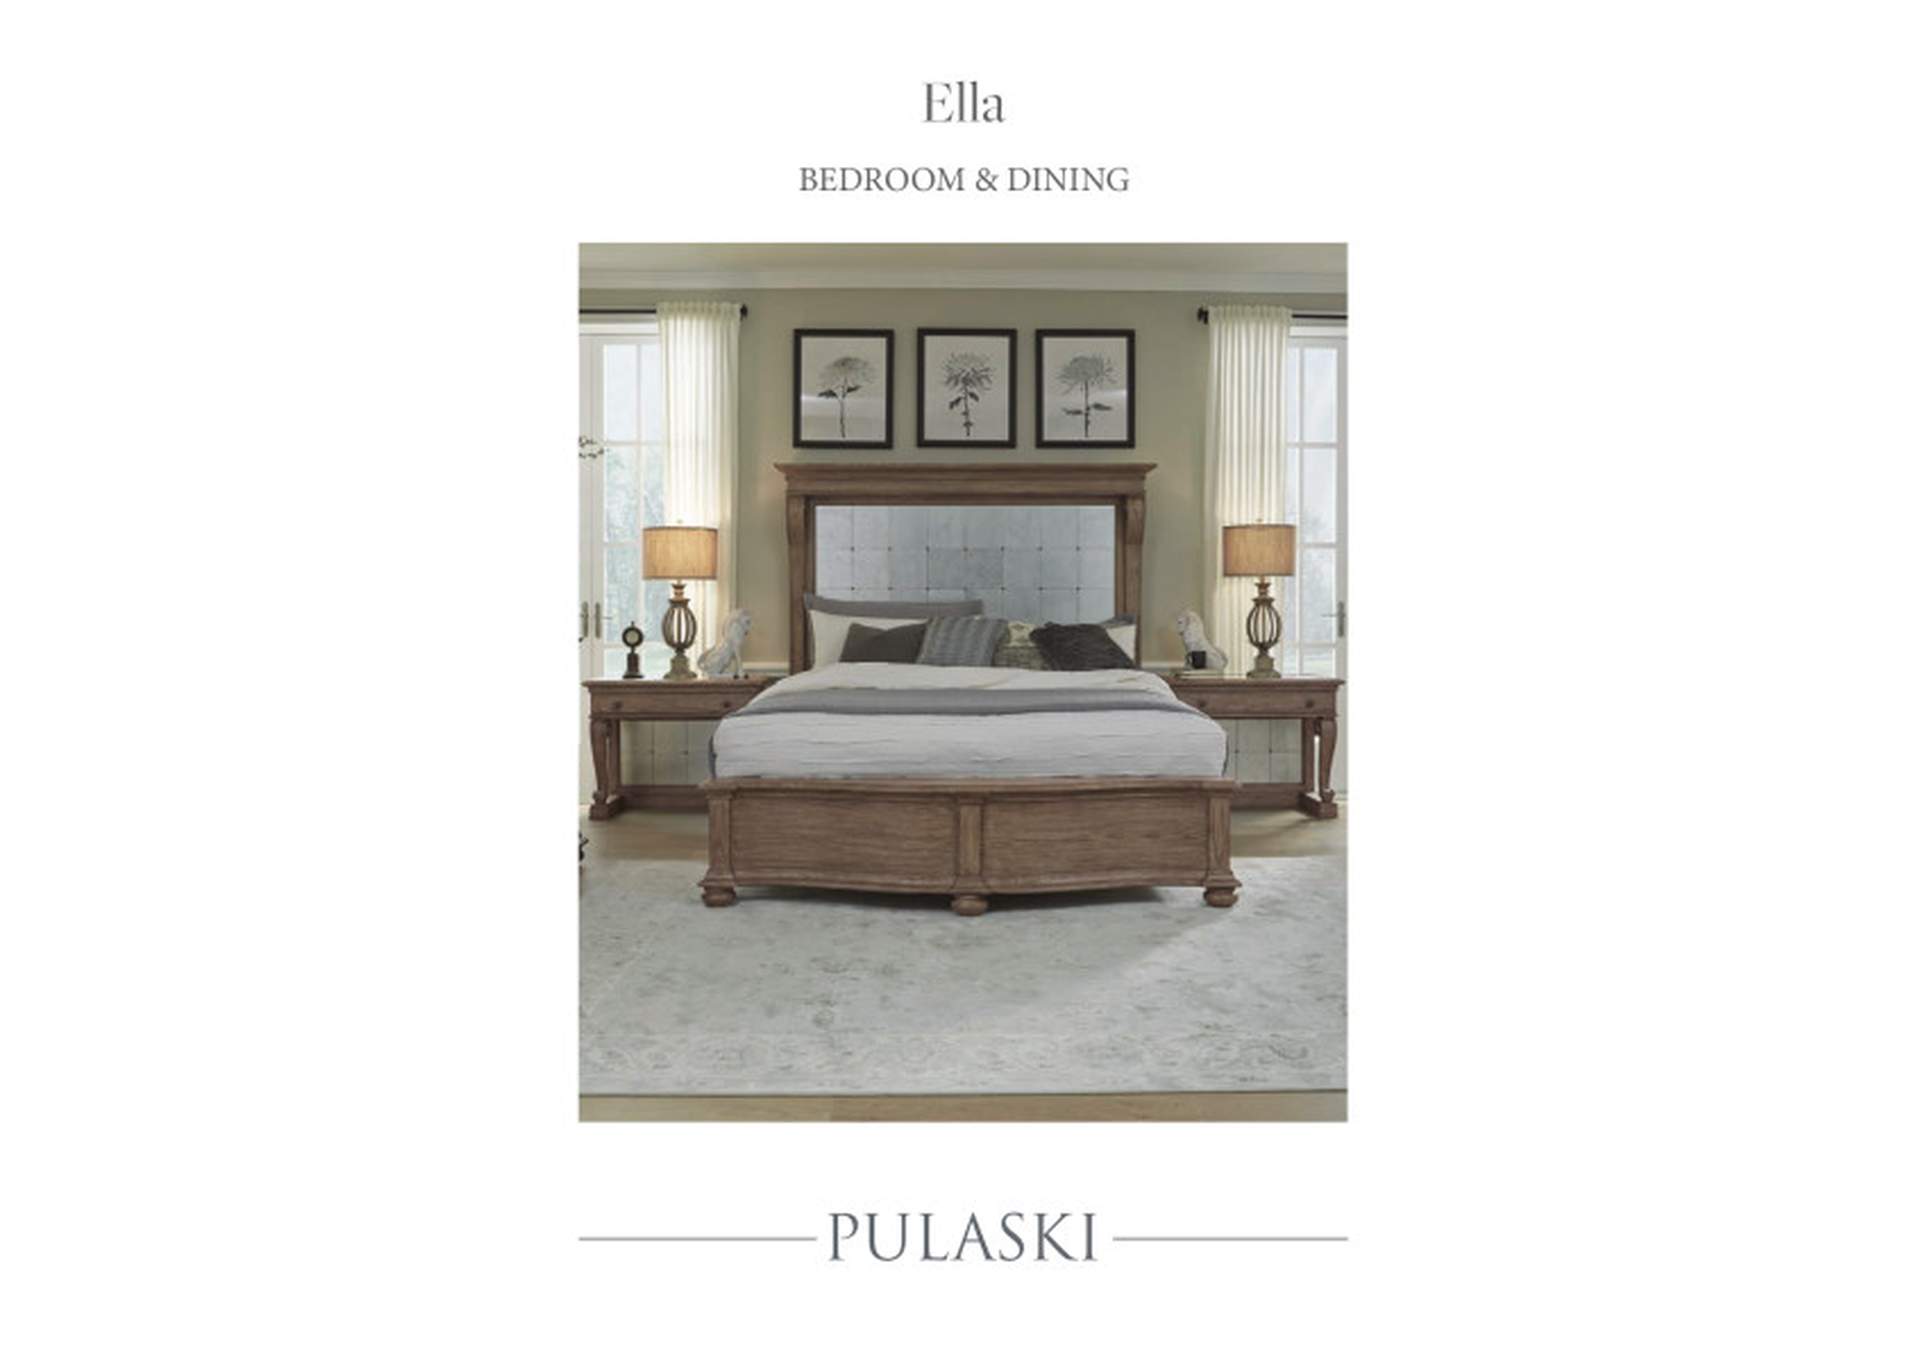 Ella Credenza in Gray,Pulaski Furniture